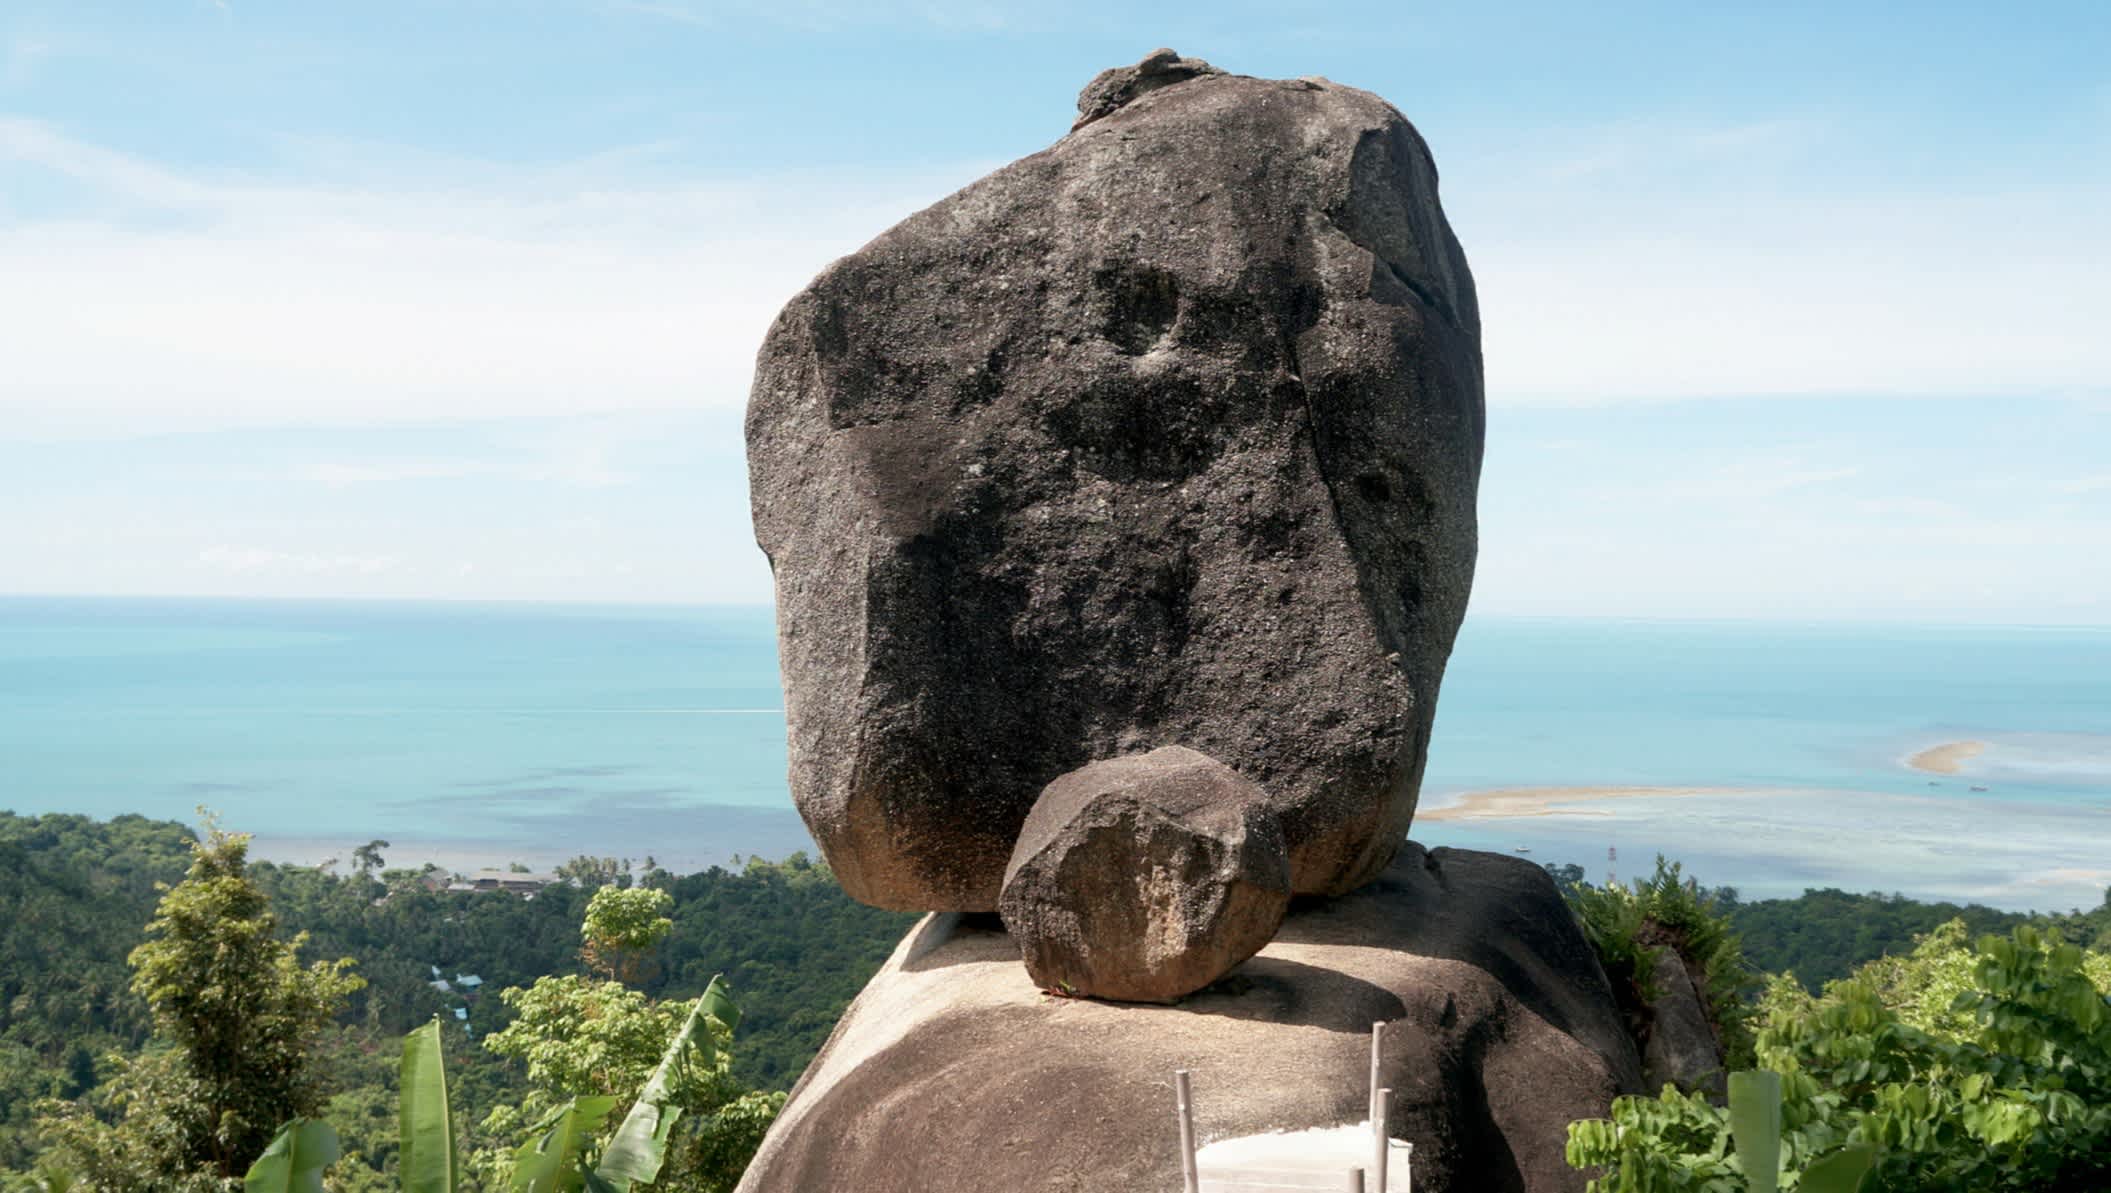 Beau rocher de l'Overlap Stone avec vue sur la côte sur l'île de Koh Samui, Thaïlande

